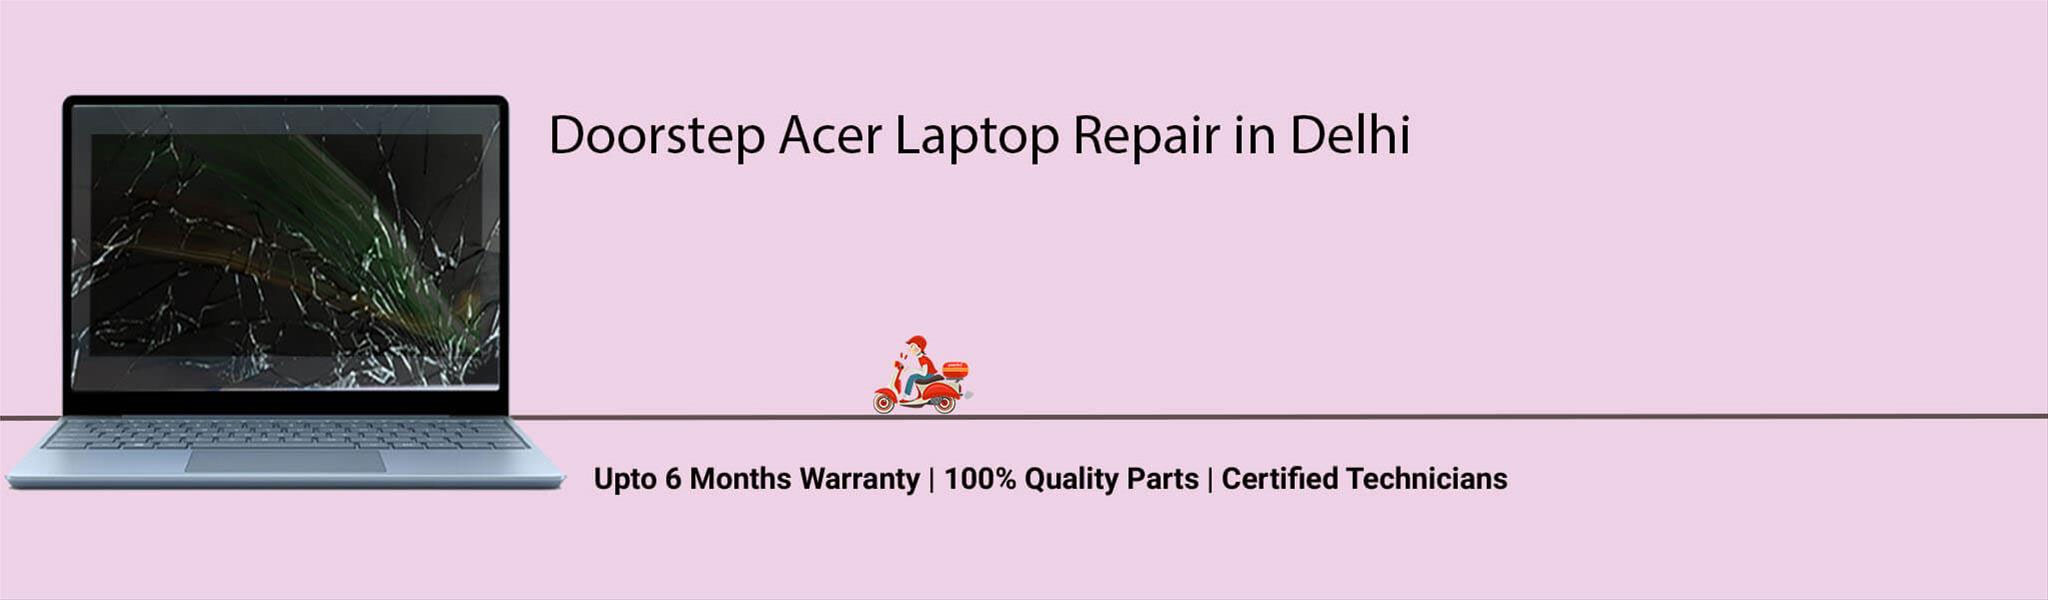 acer-laptop-banner-delhi.jpg